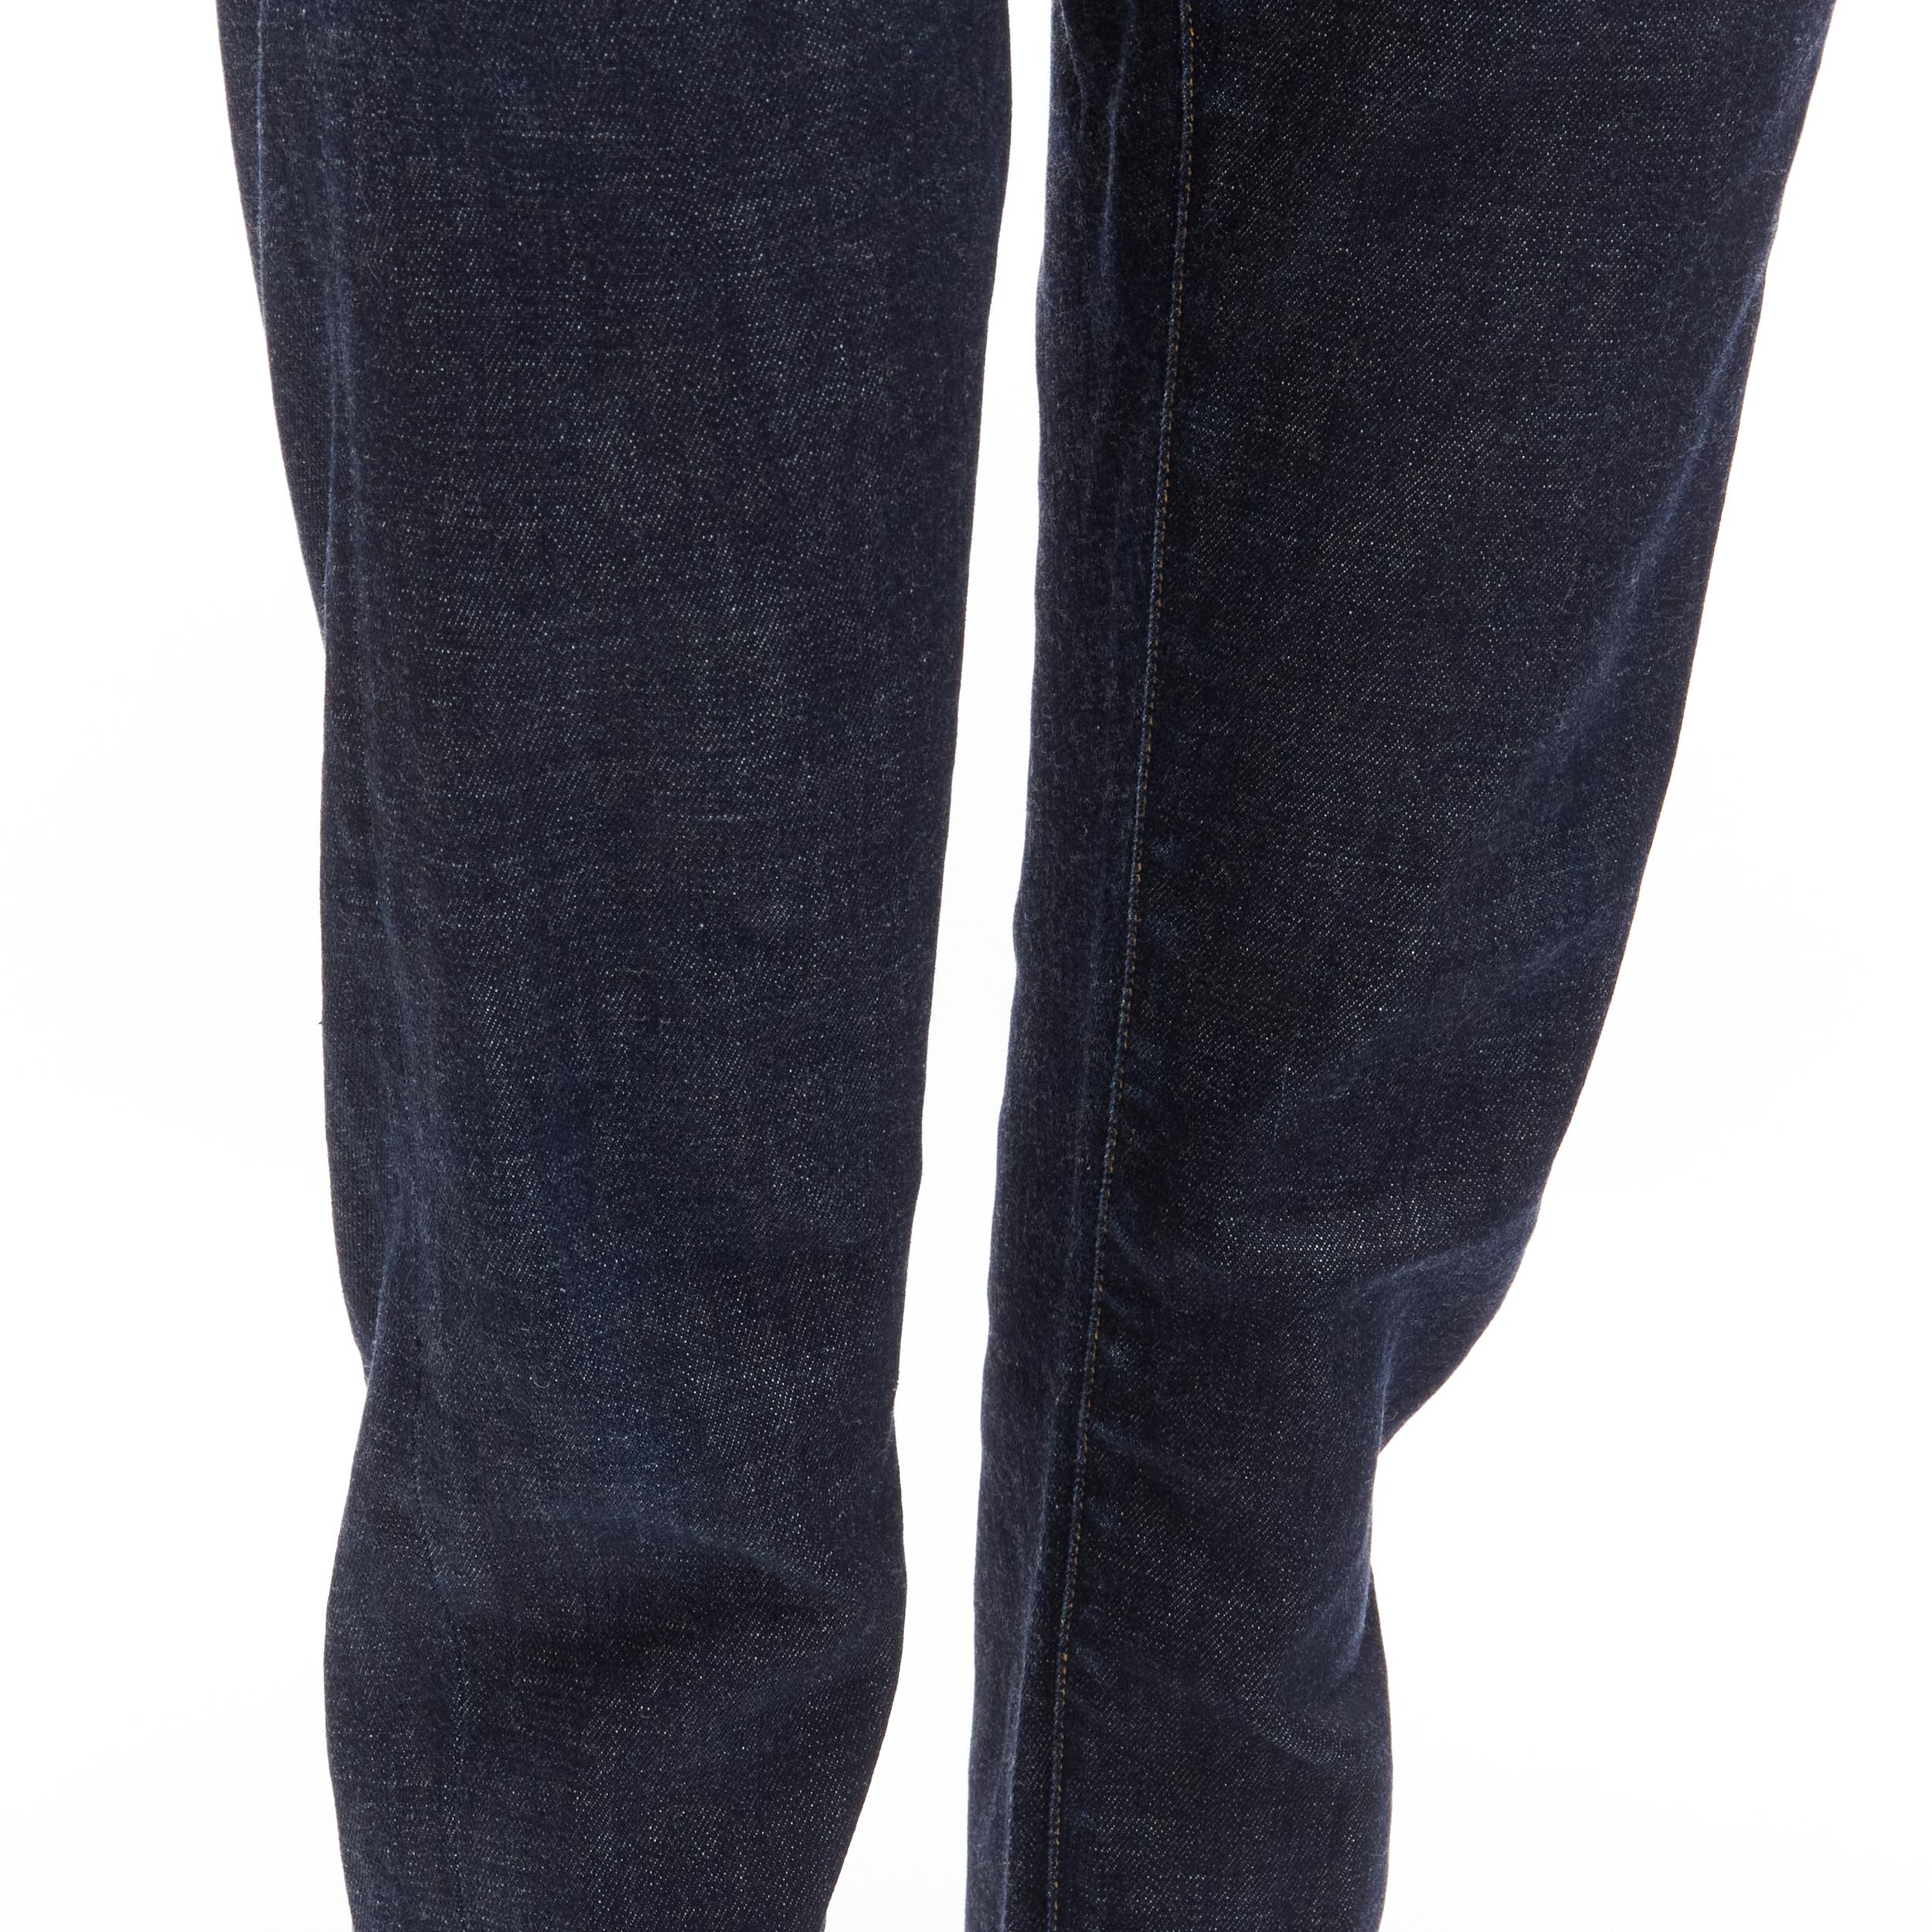 Jeans cropped TOM FORD bleu foncé classique en denim délavé avec étiquette logo 28